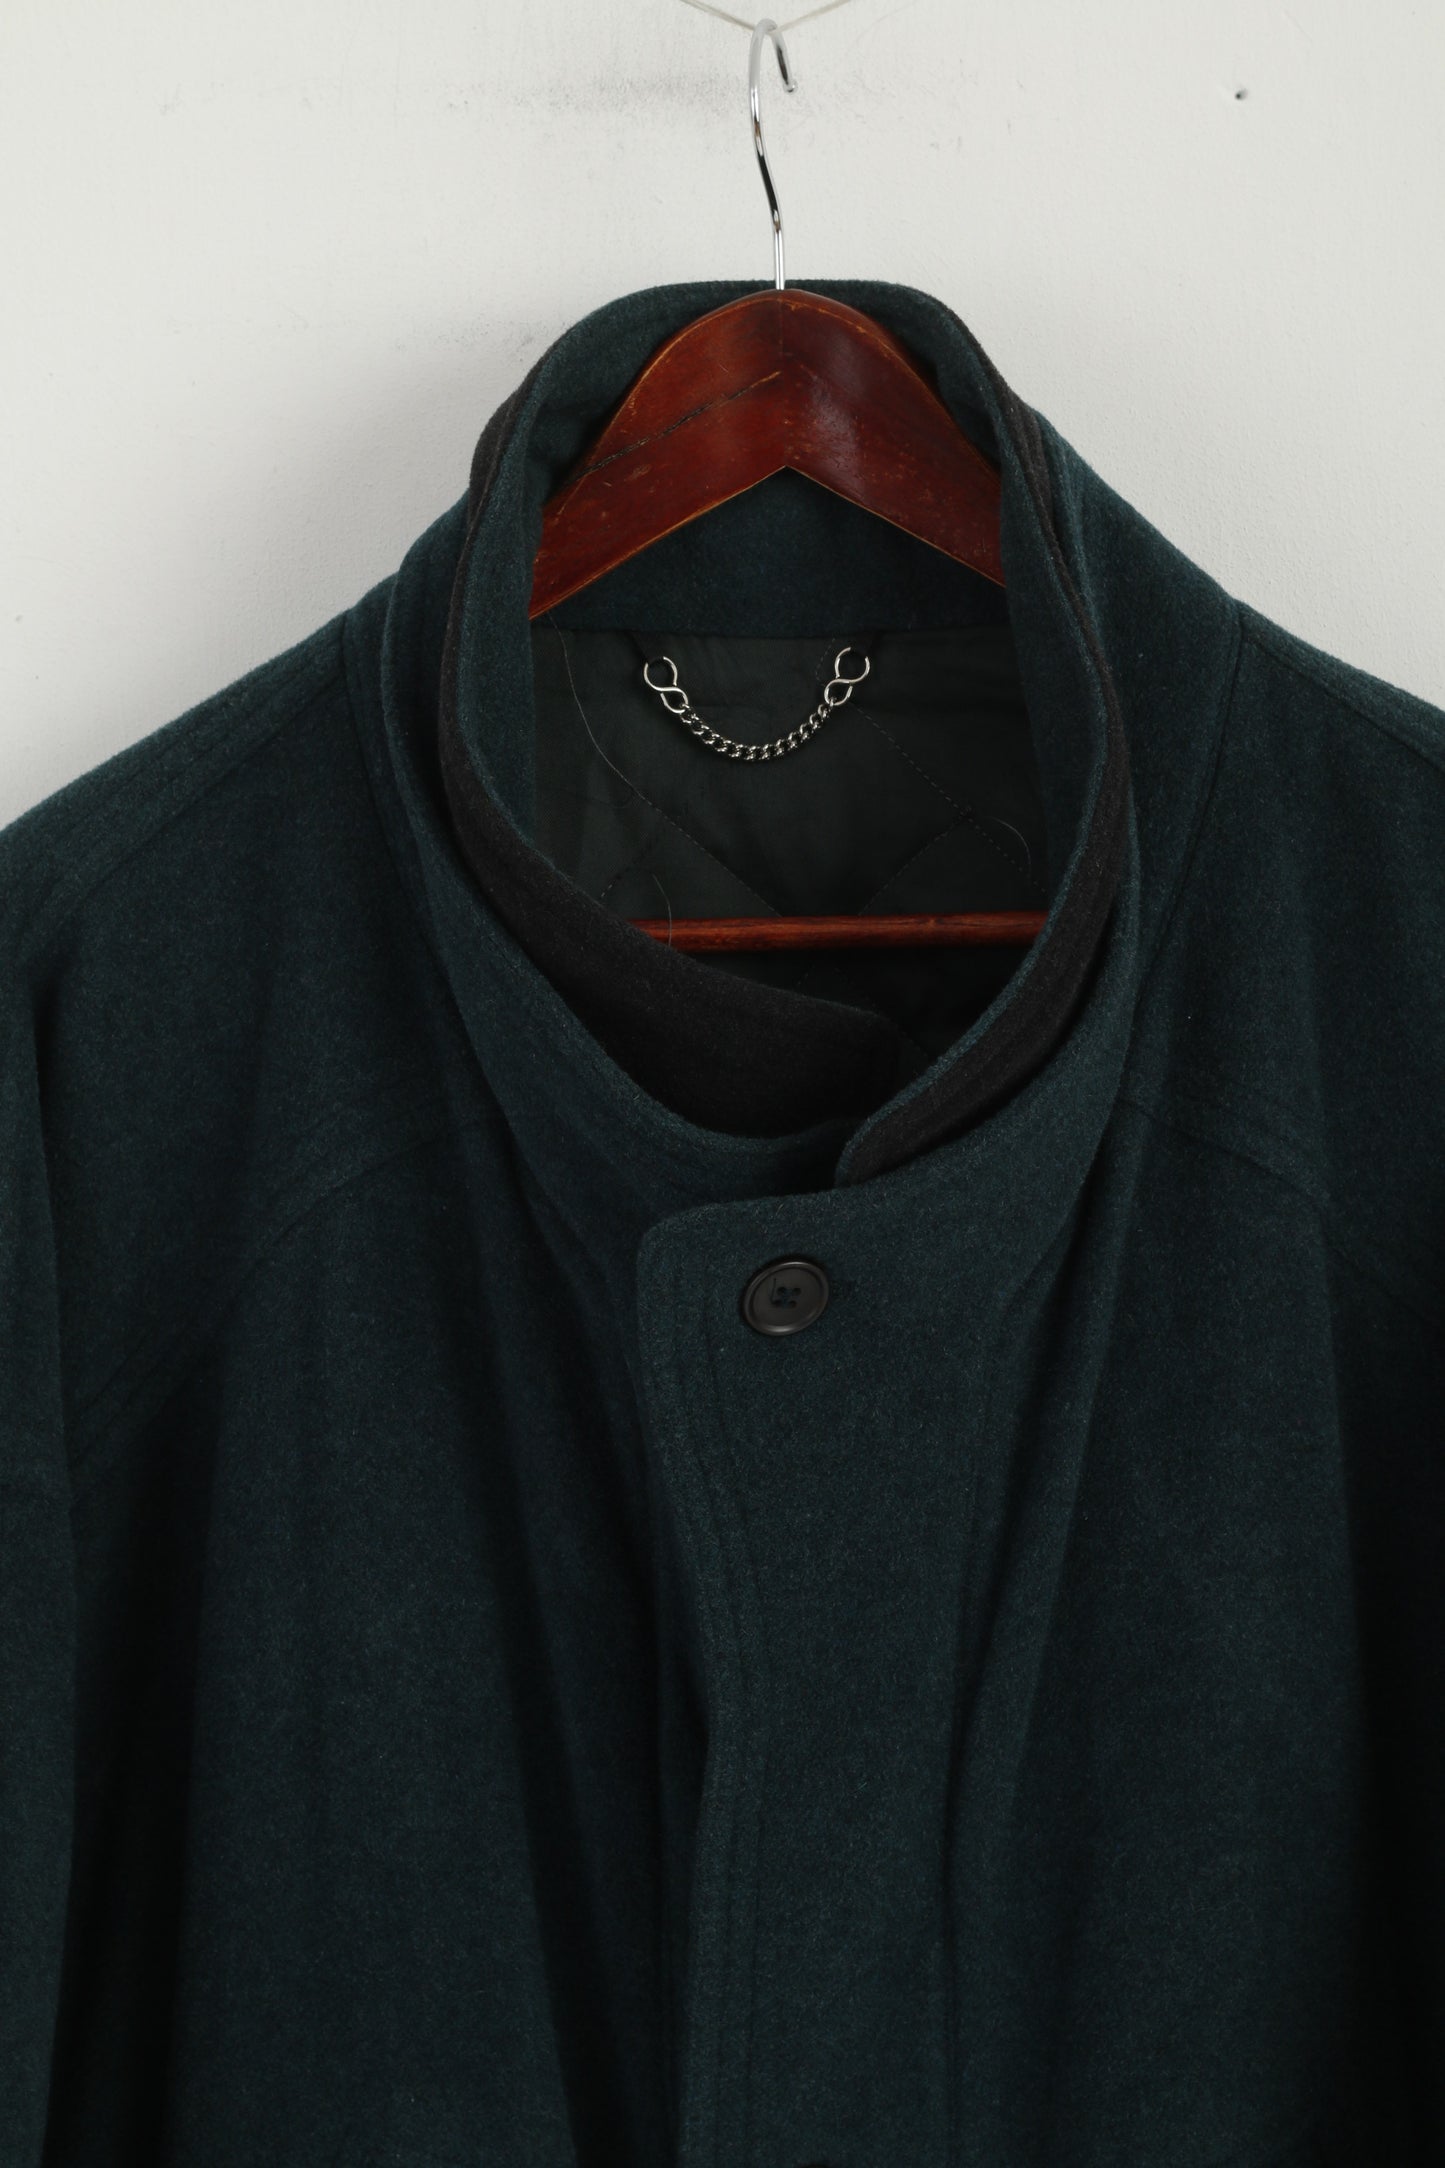 Wellington hommes 44 L manteau bouteille vert laine cachemire Vintage pleine fermeture éclair vêtements de loisirs haut